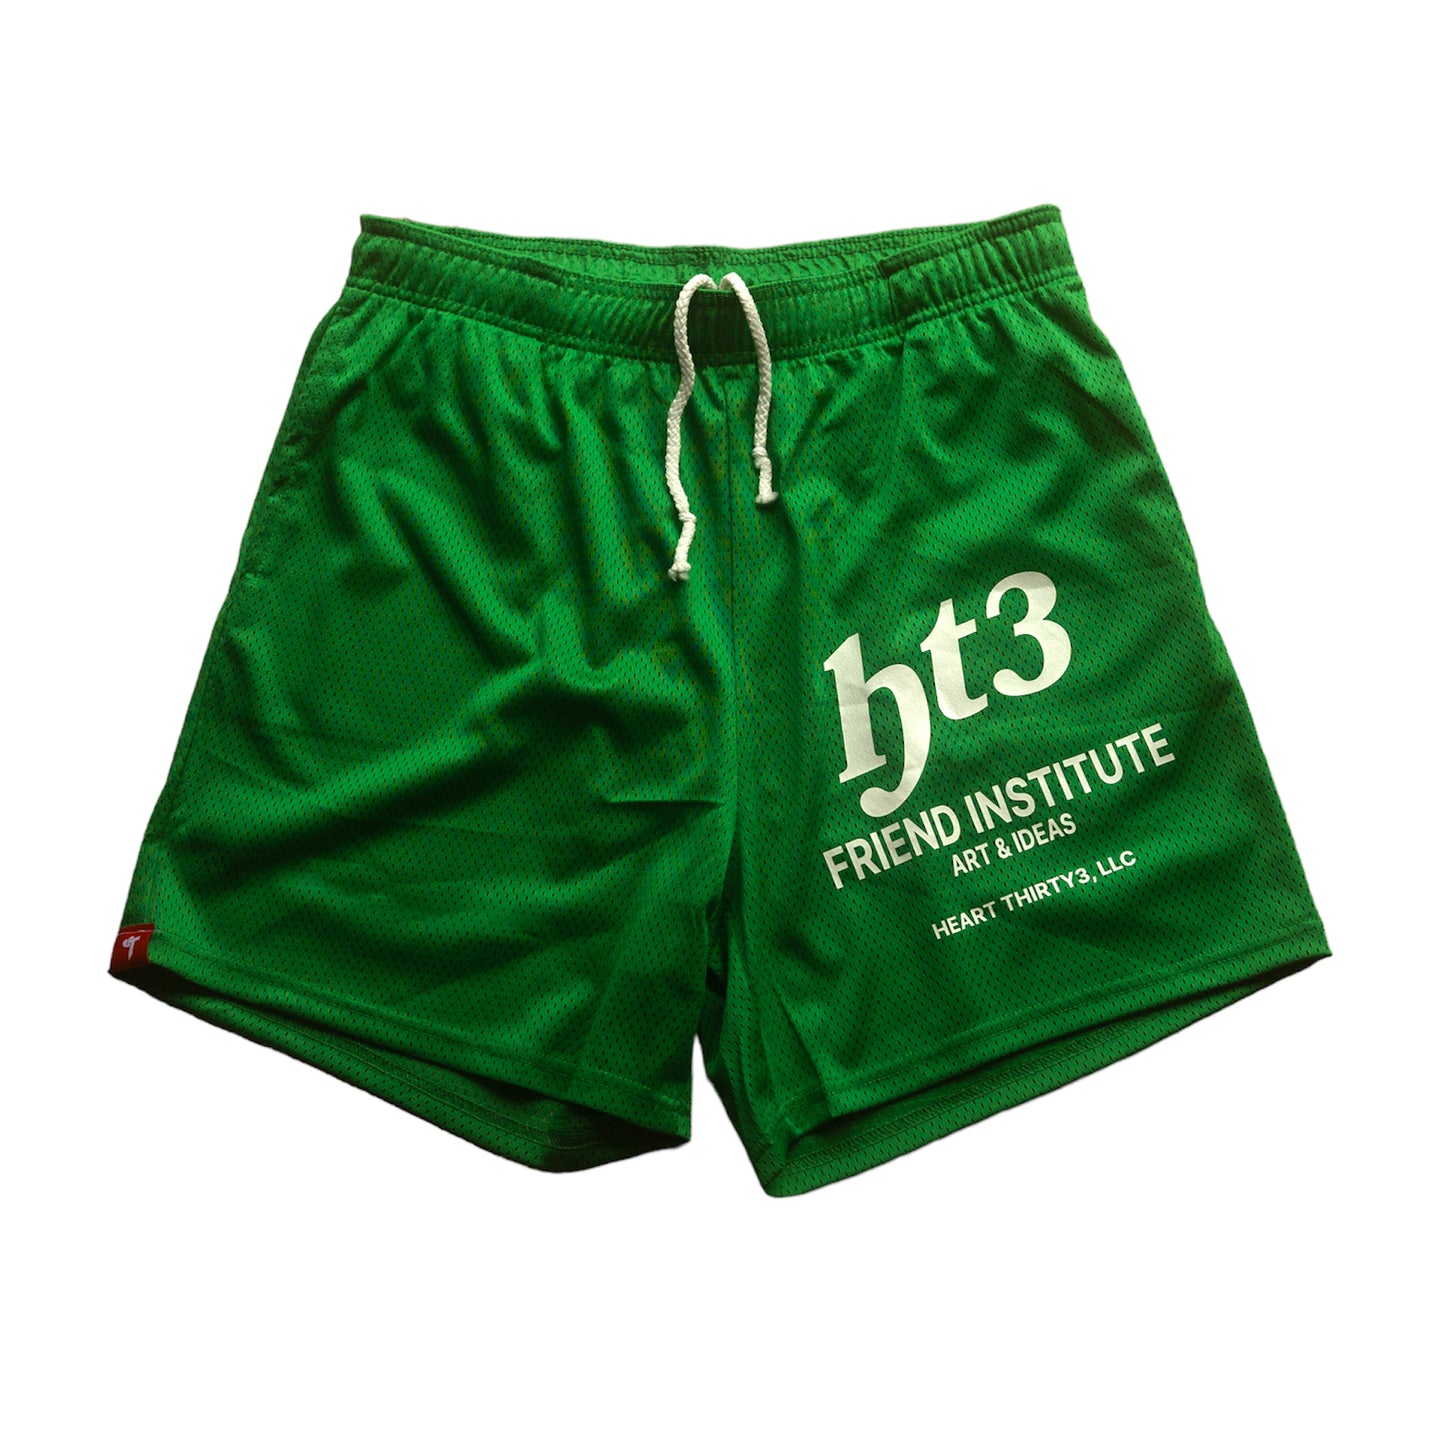 HT3 - Friend Institute Shorts